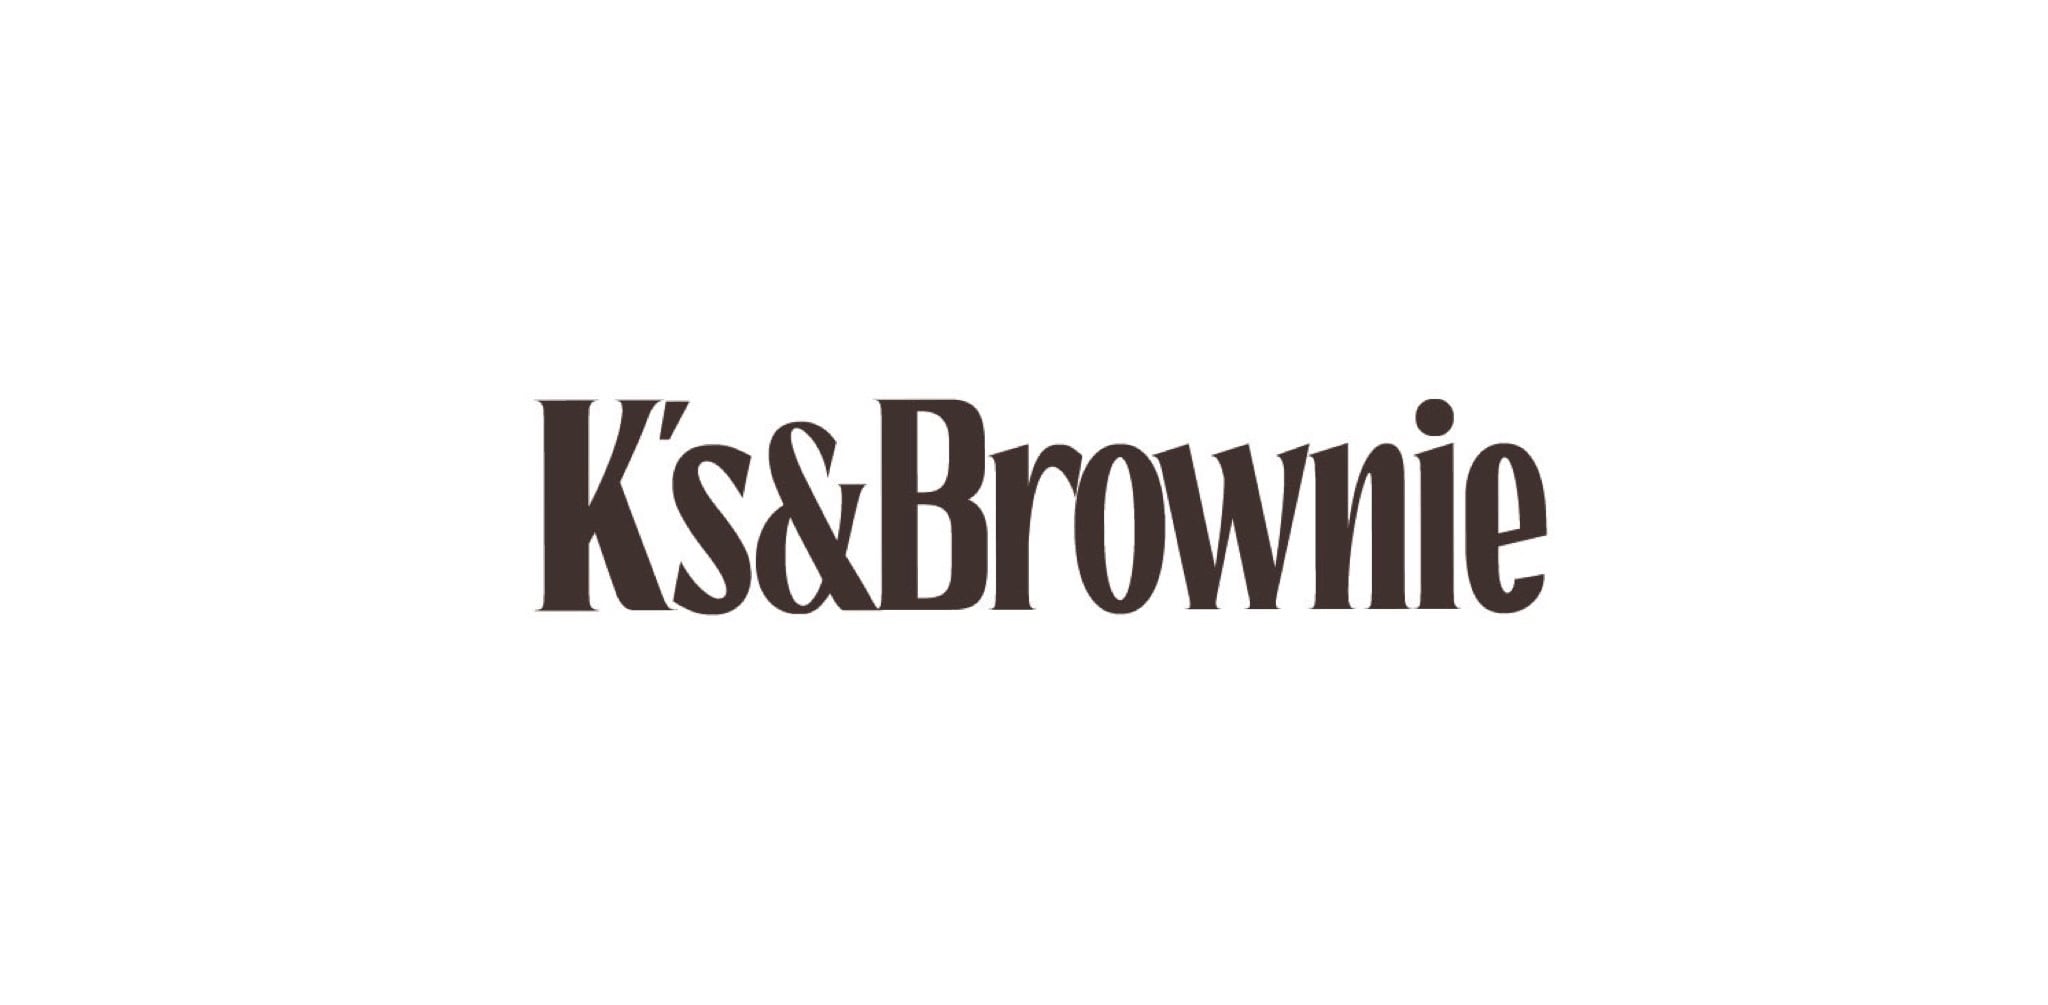 K's&Brownie